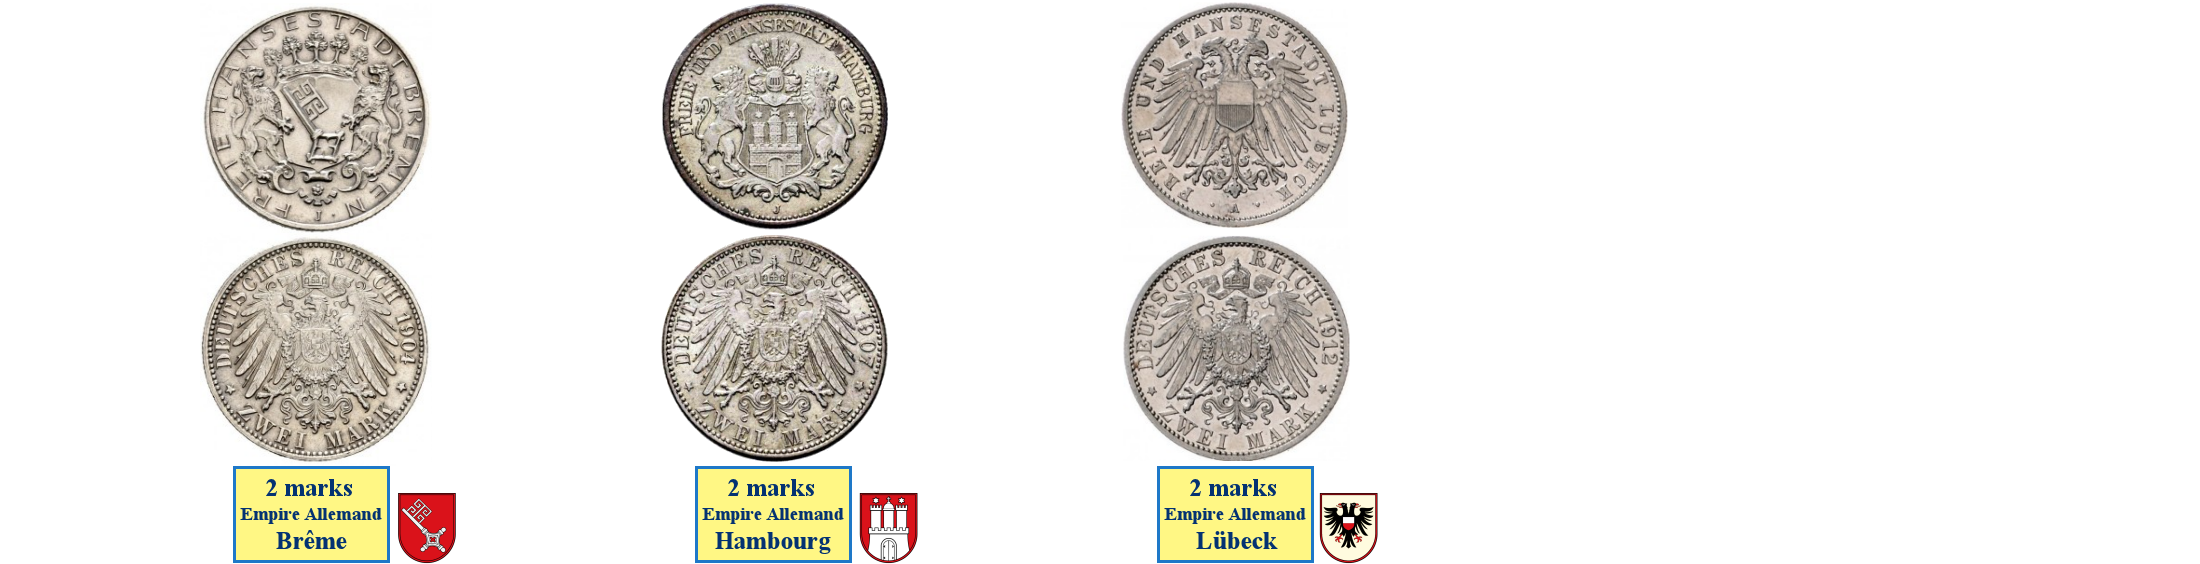 Photos de pièces de monnaies des villes hanséatiques libres de l'Empire Allemand